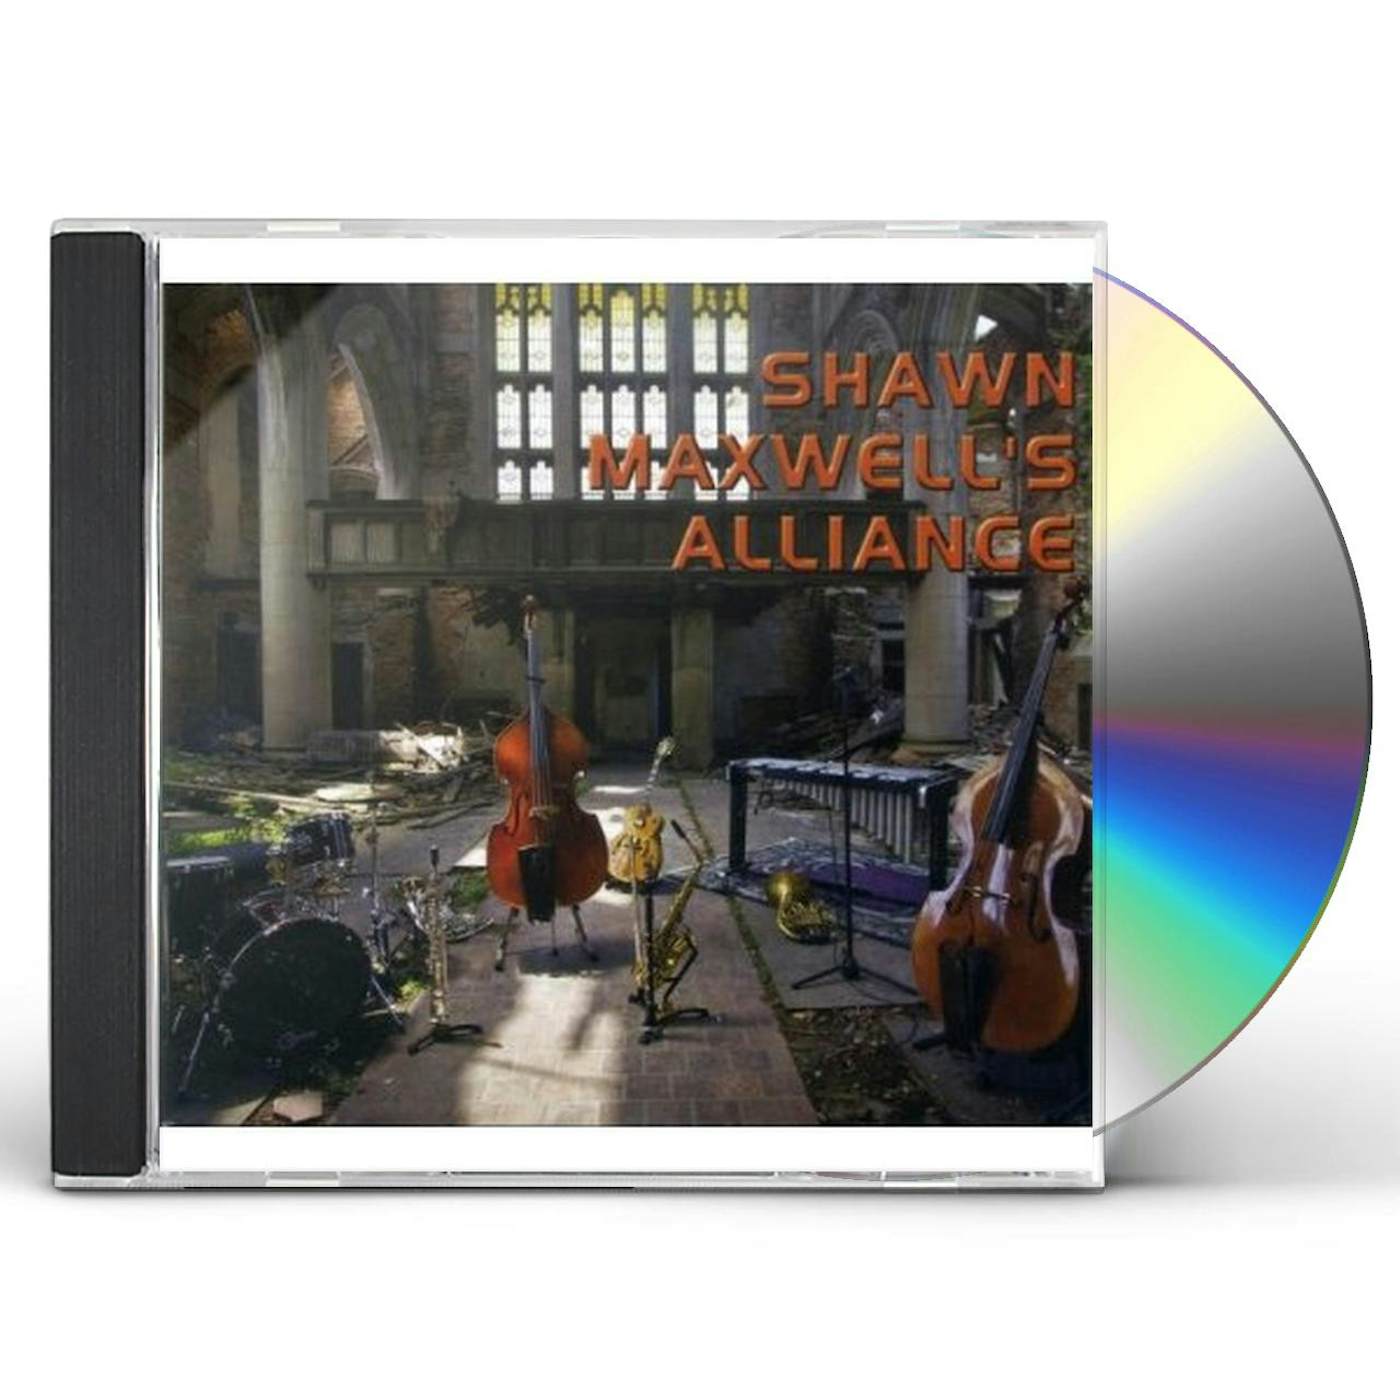 SHAWN MAXWELLS ALLIANCE CD